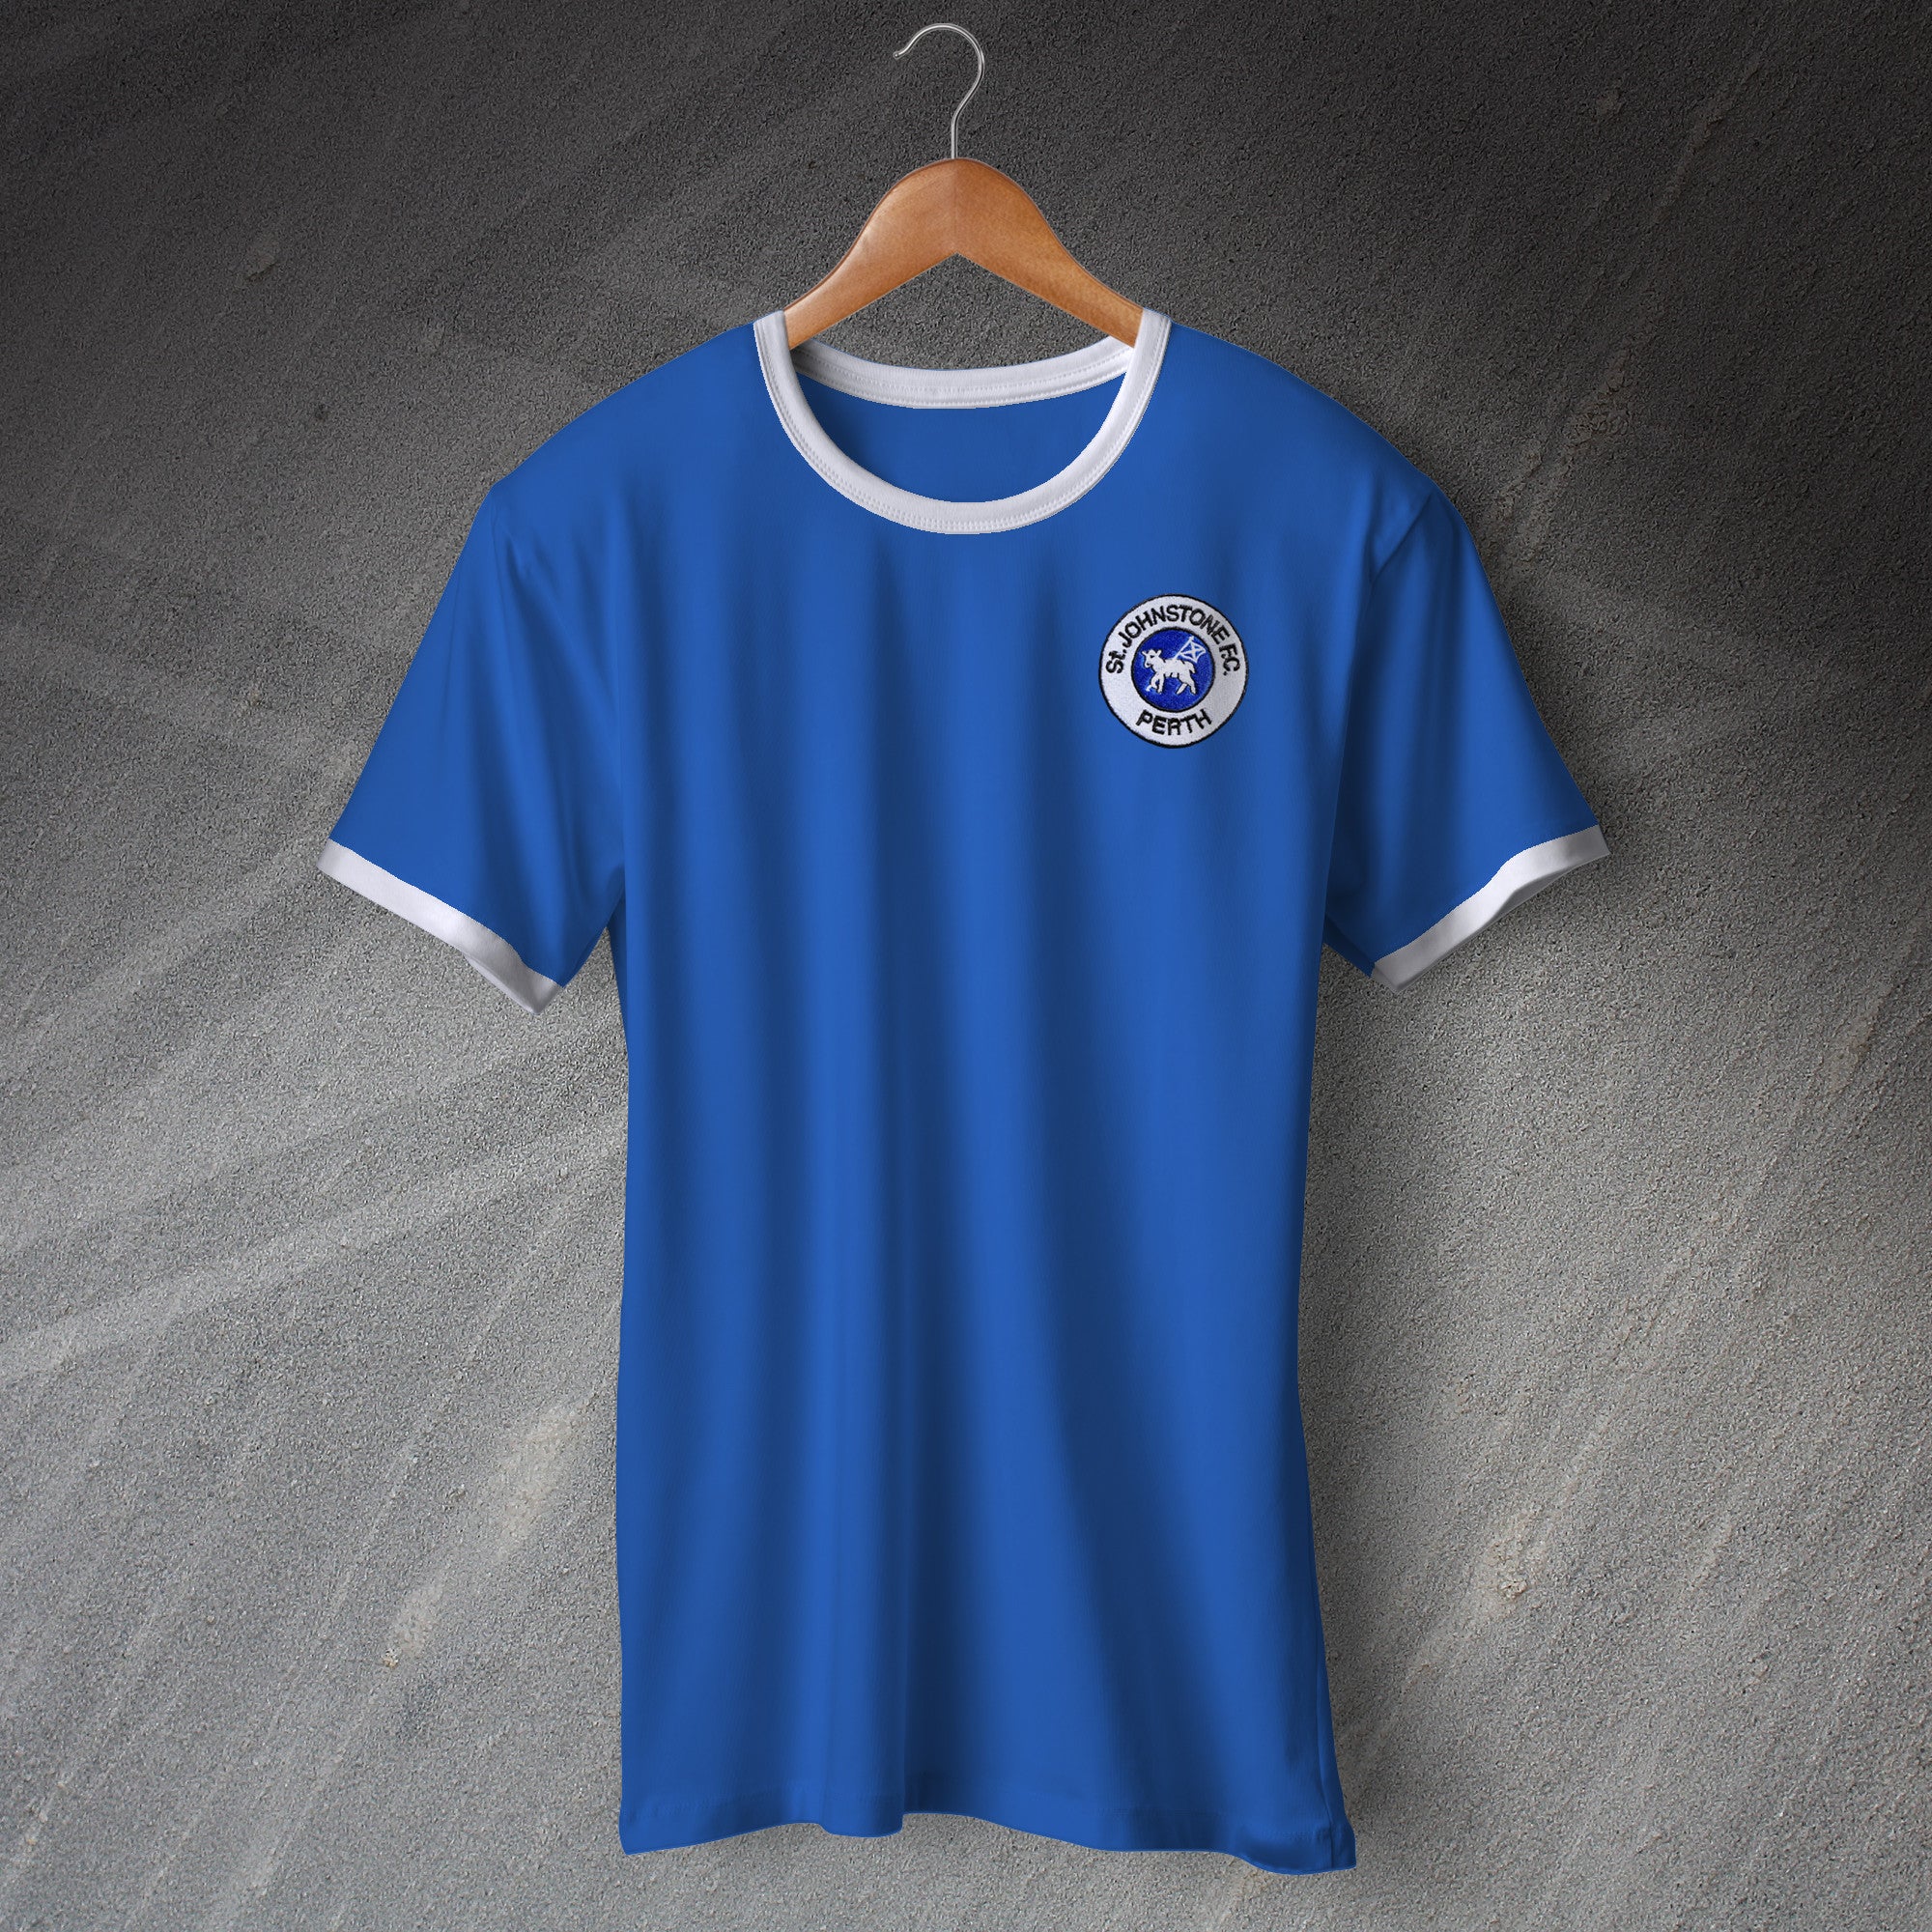 Old School St Johnstone Football Shirt | St Johnstone Ringer Shirts ...